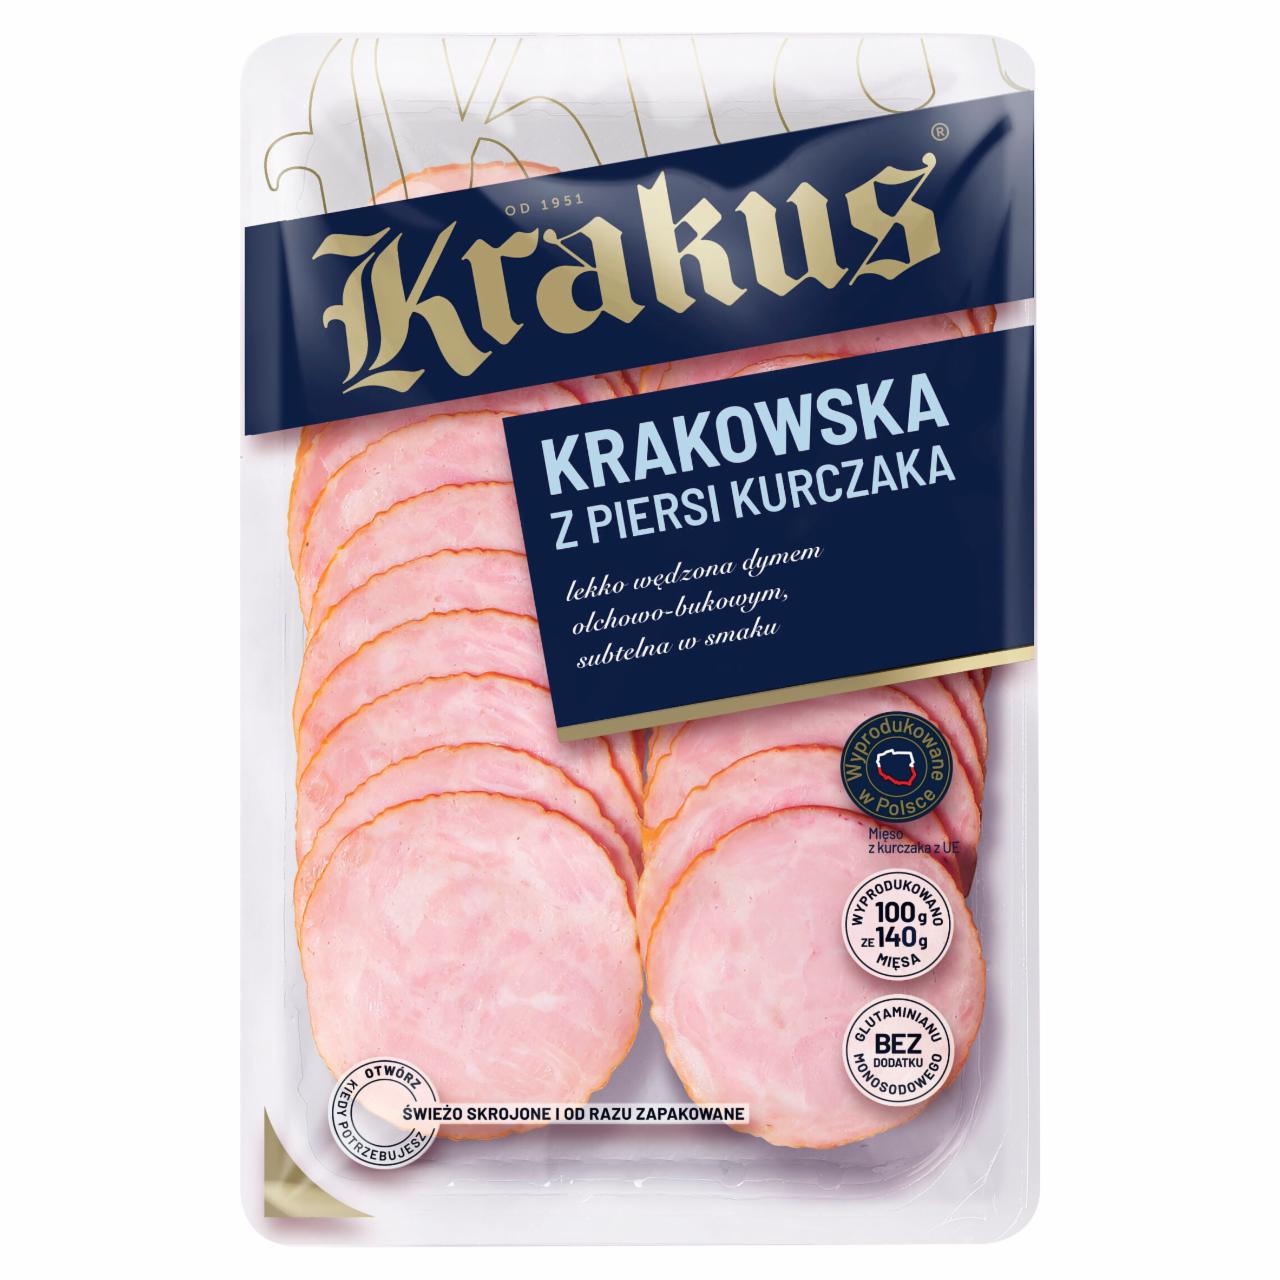 Zdjęcia - Krakus Kiełbasa krakowska z piersi kurczaka 80 g (2 x 40 g)